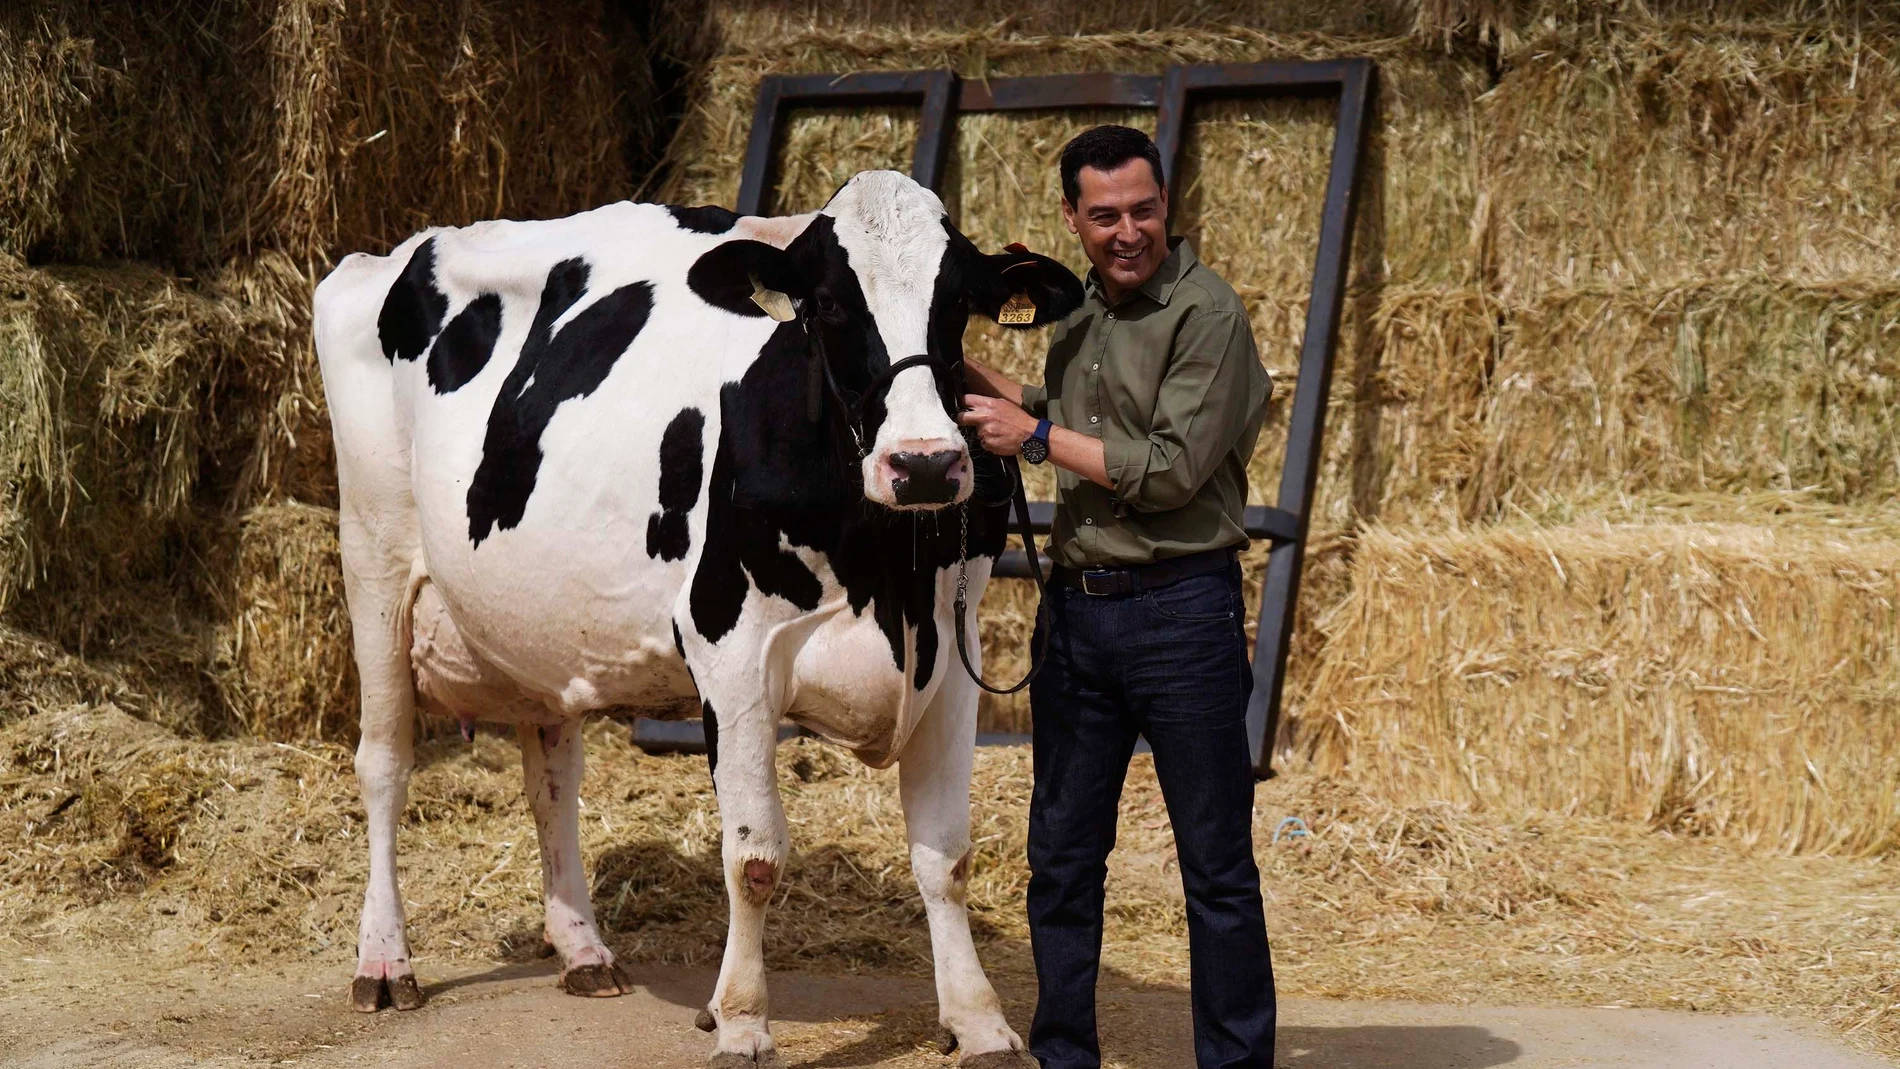 El presidente de la Junta de Andalucía, Juanma Moreno, se reencuentra con Fadi, la vaca talismán que según él "me ayudó a ganar las elecciones". EFE / Rafa Alcaide